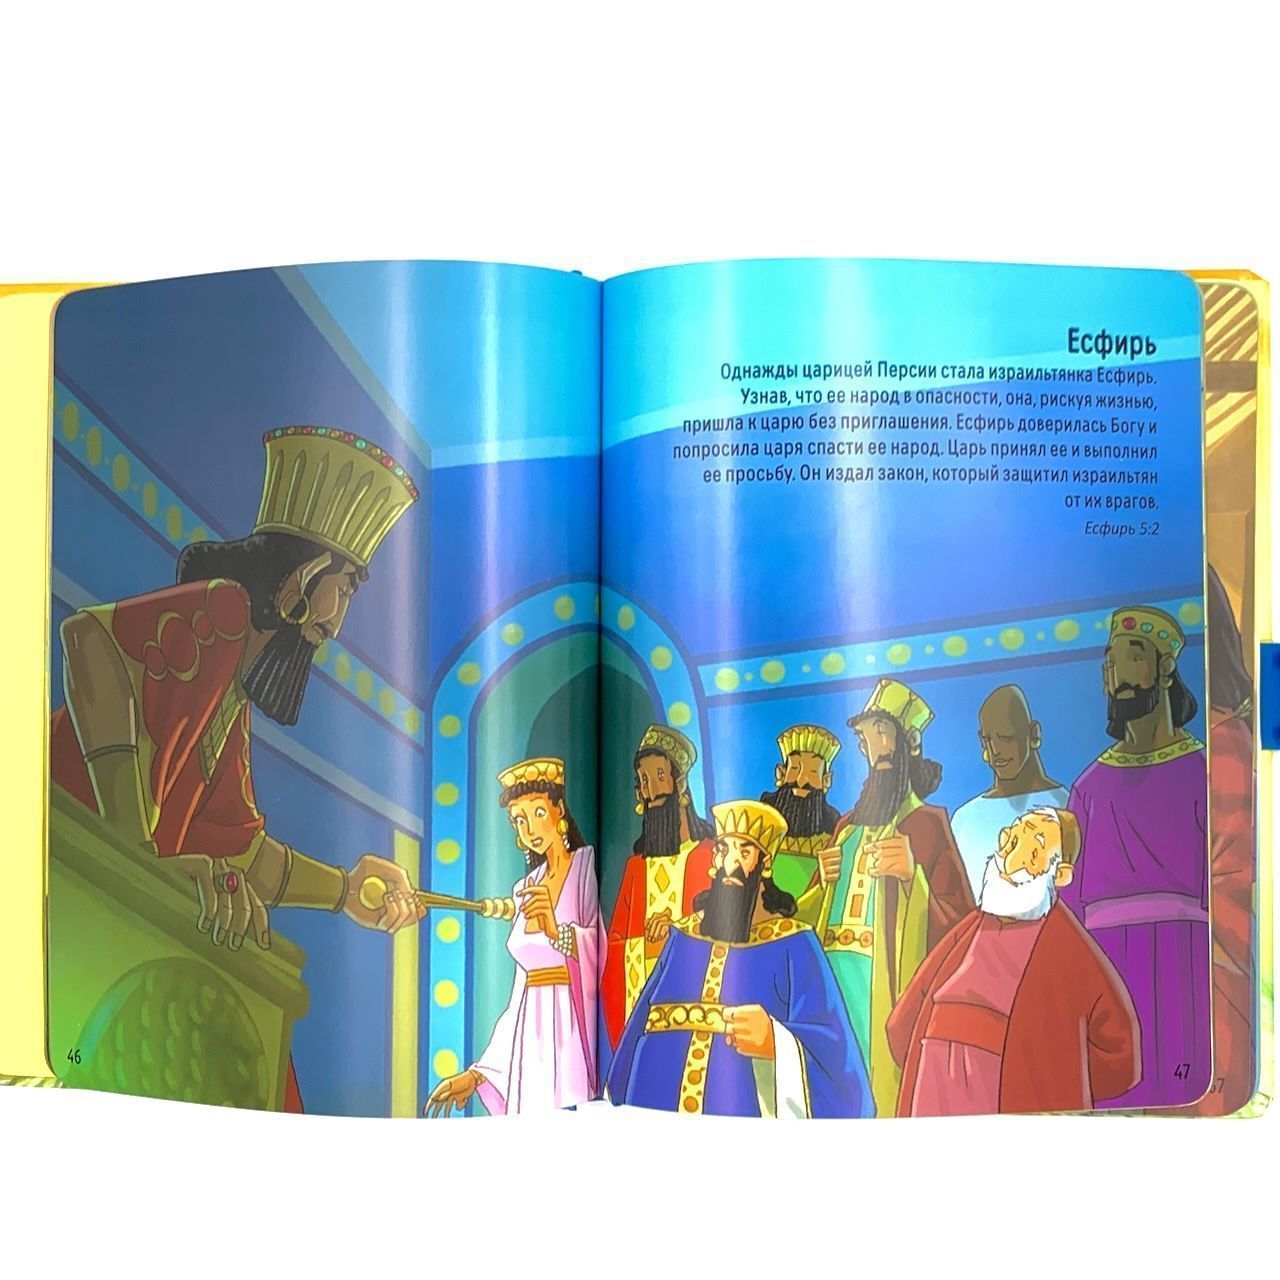 Моя большая удобная Библия. Чемоданчик. Библейские истории для детей.